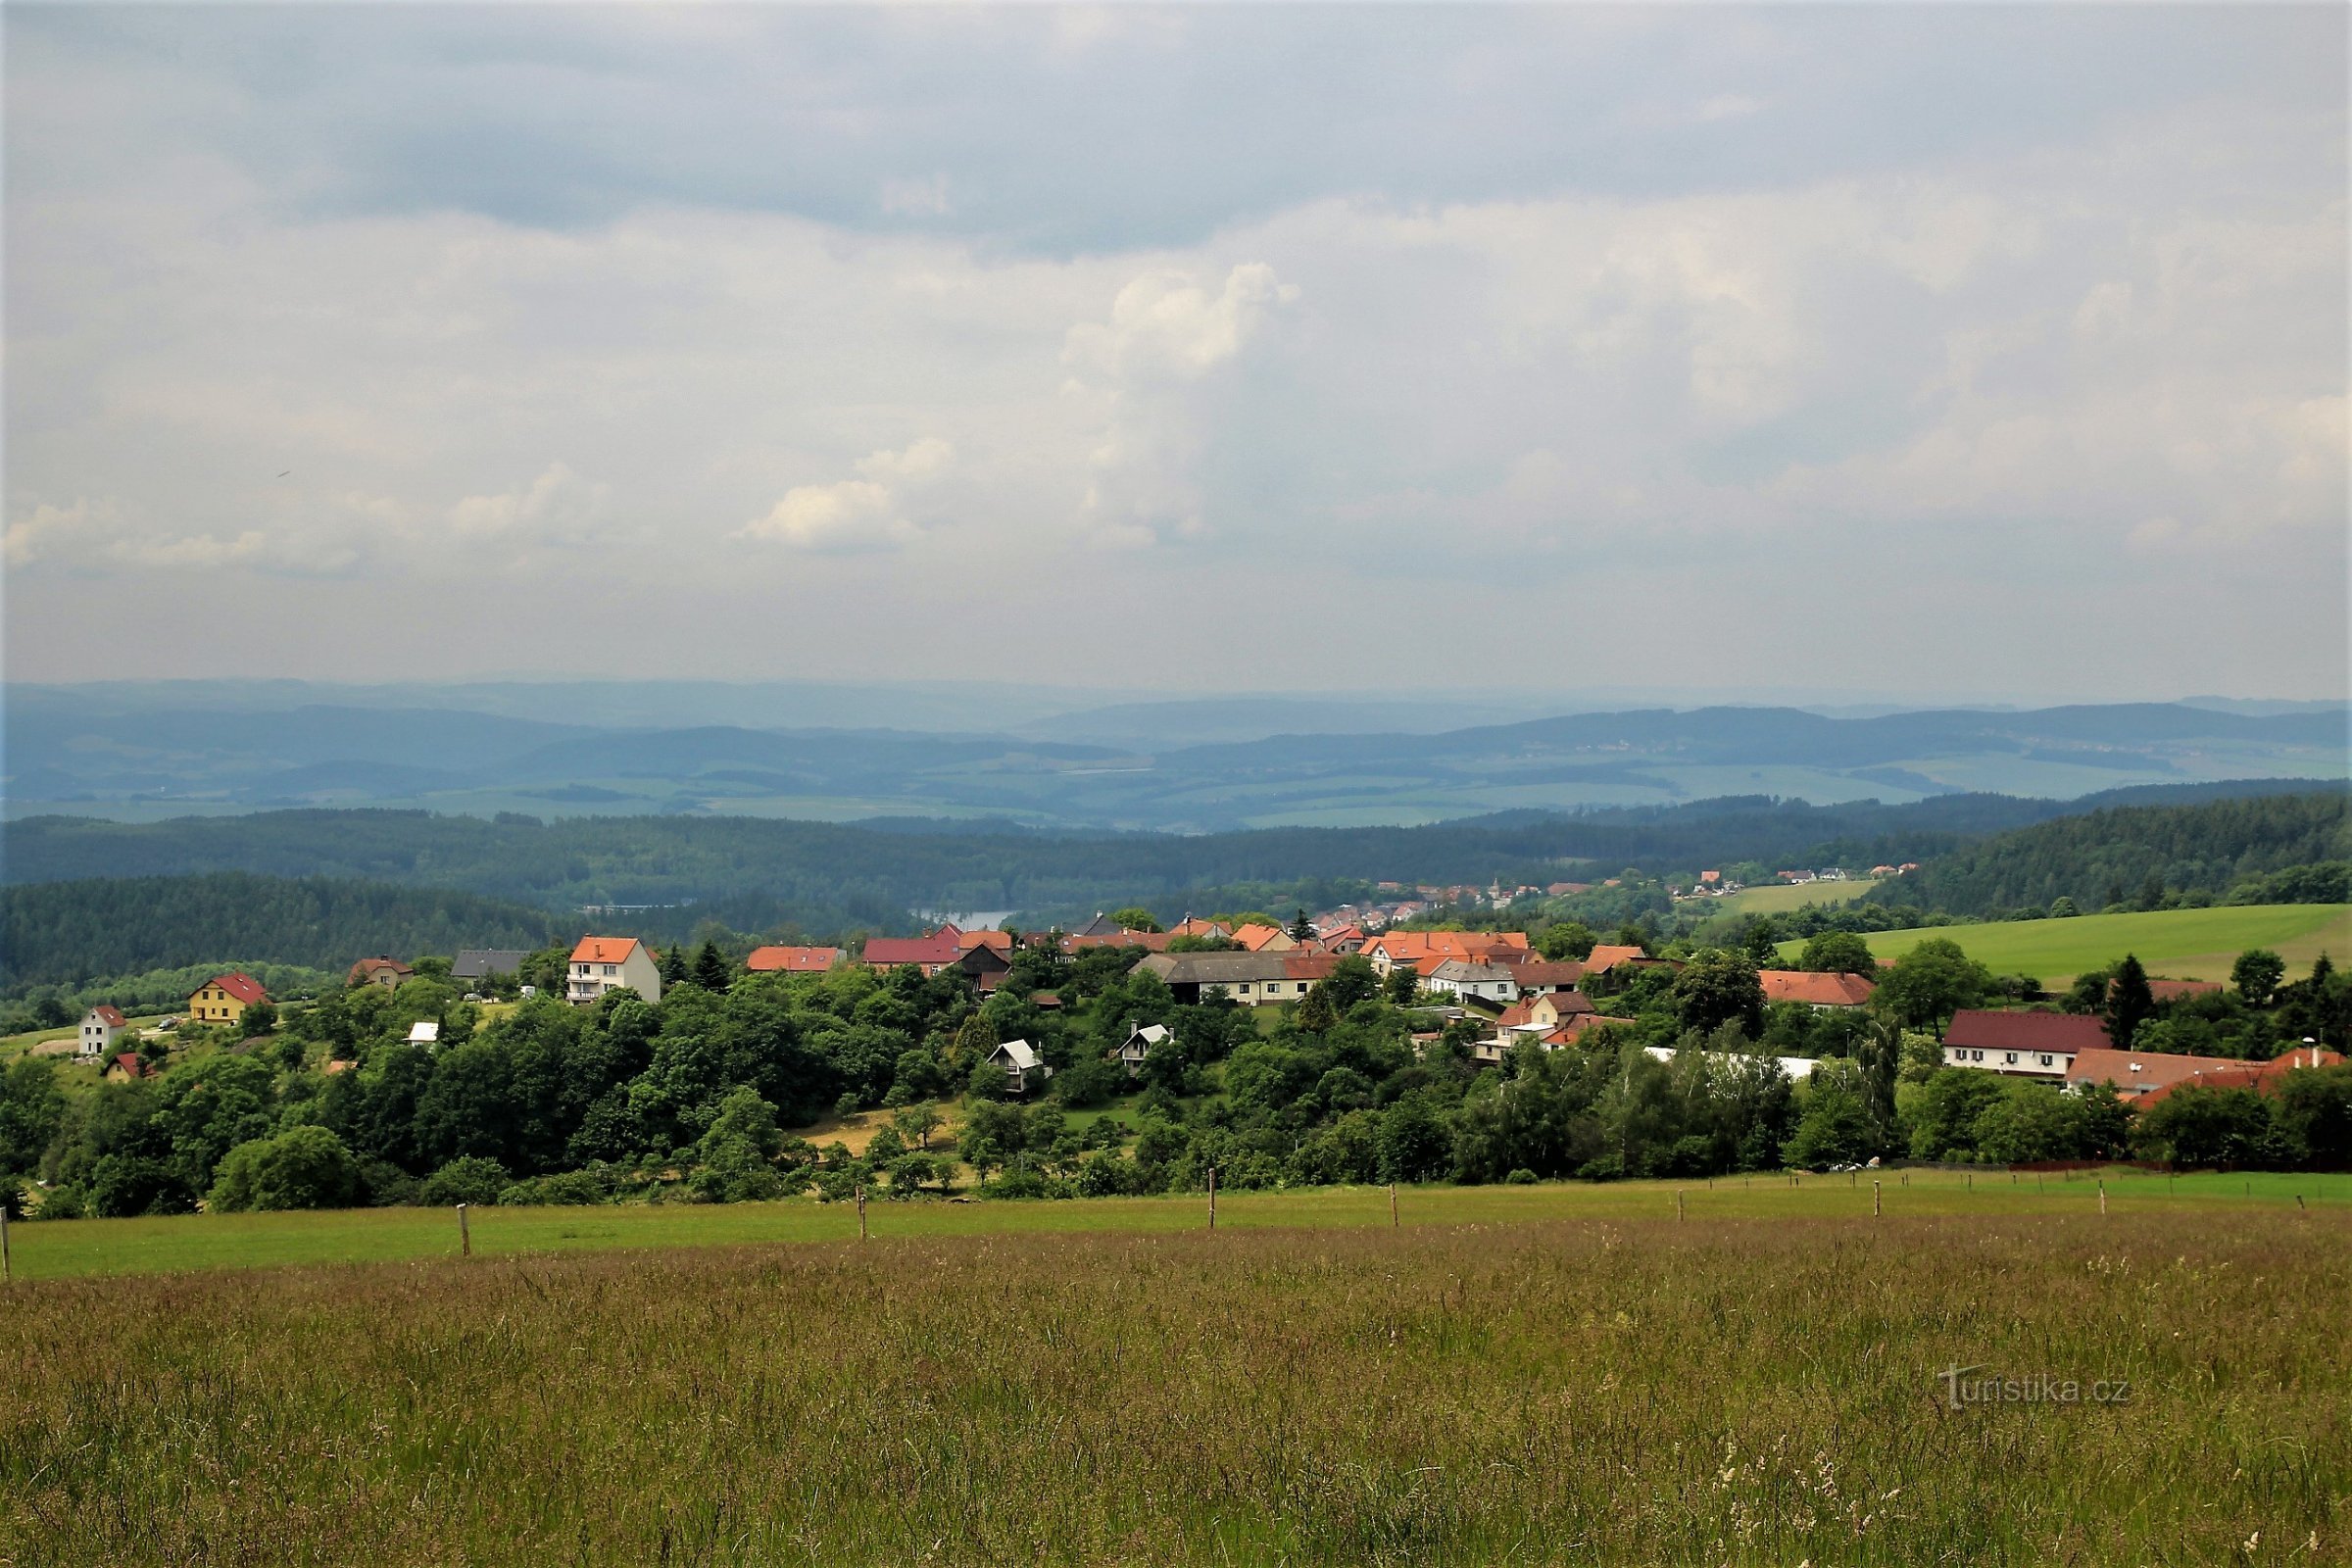 Unterhalb des Aussichtspunktes liegt das malerische Dorf Velenov. Darunter befindet sich ein breites Becken nach Bosko